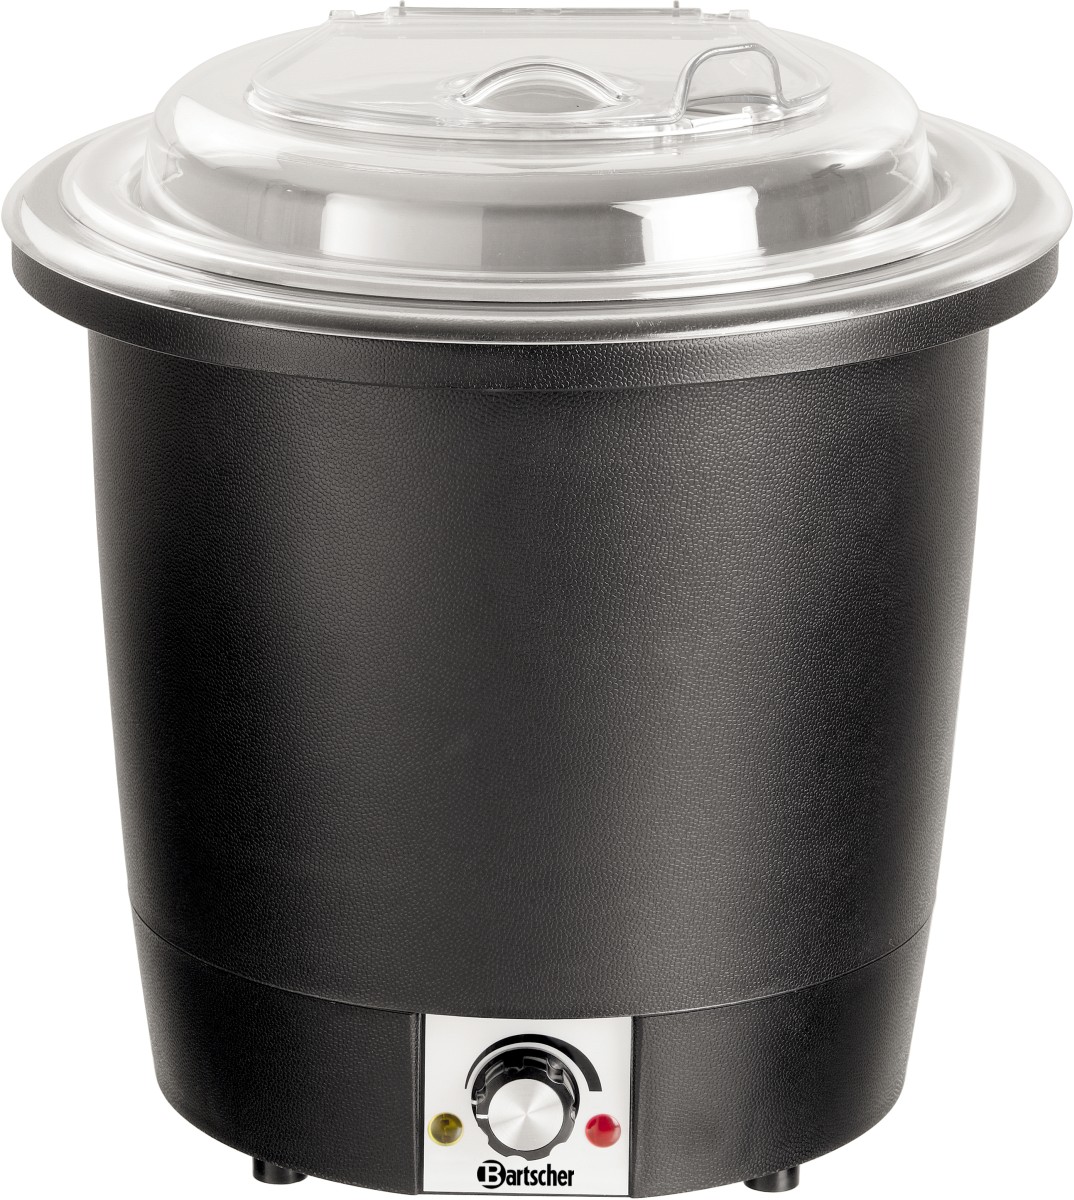  Bartscher Soup kettle, 10L, black 